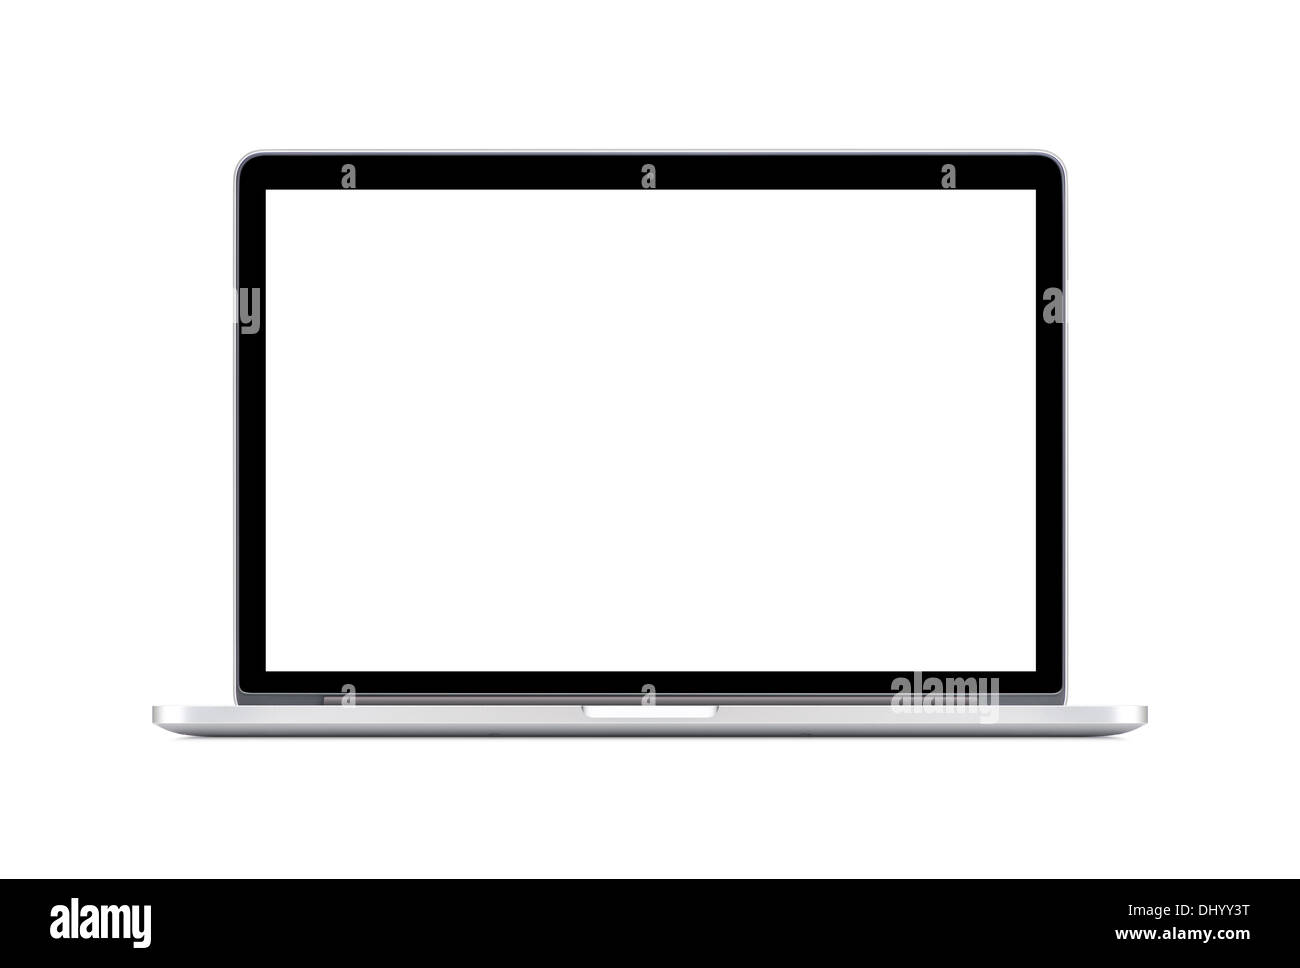 Directement Vue de face d'un ordinateur portable moderne avec un écran blanc isolé sur fond blanc. Haute qualité. Banque D'Images